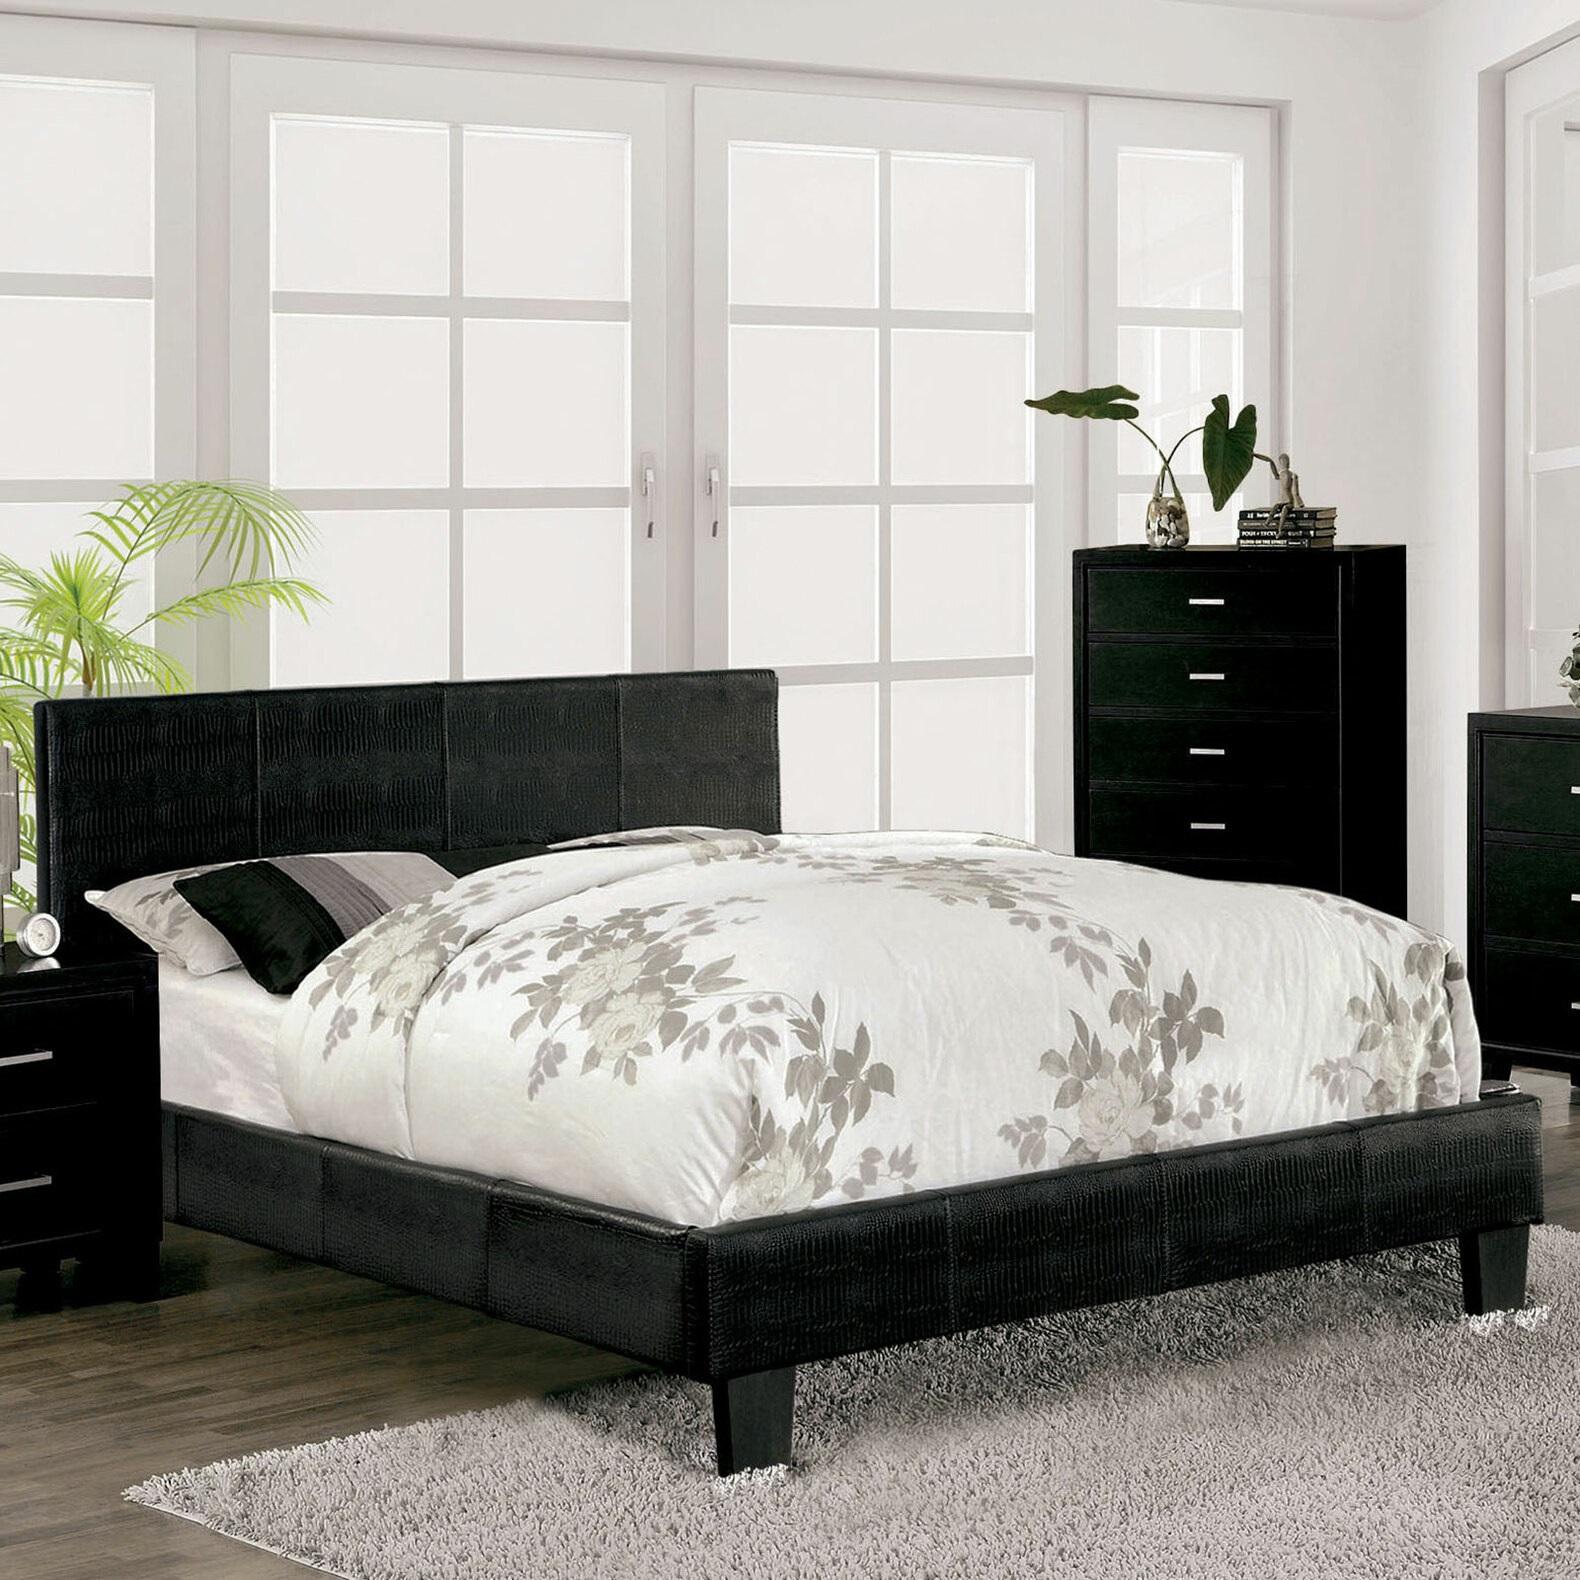 

    
Contemporary Black Solid Wood Queen Bedroom Set 3pcs Furniture of America CM7793BK-Q Wallen
